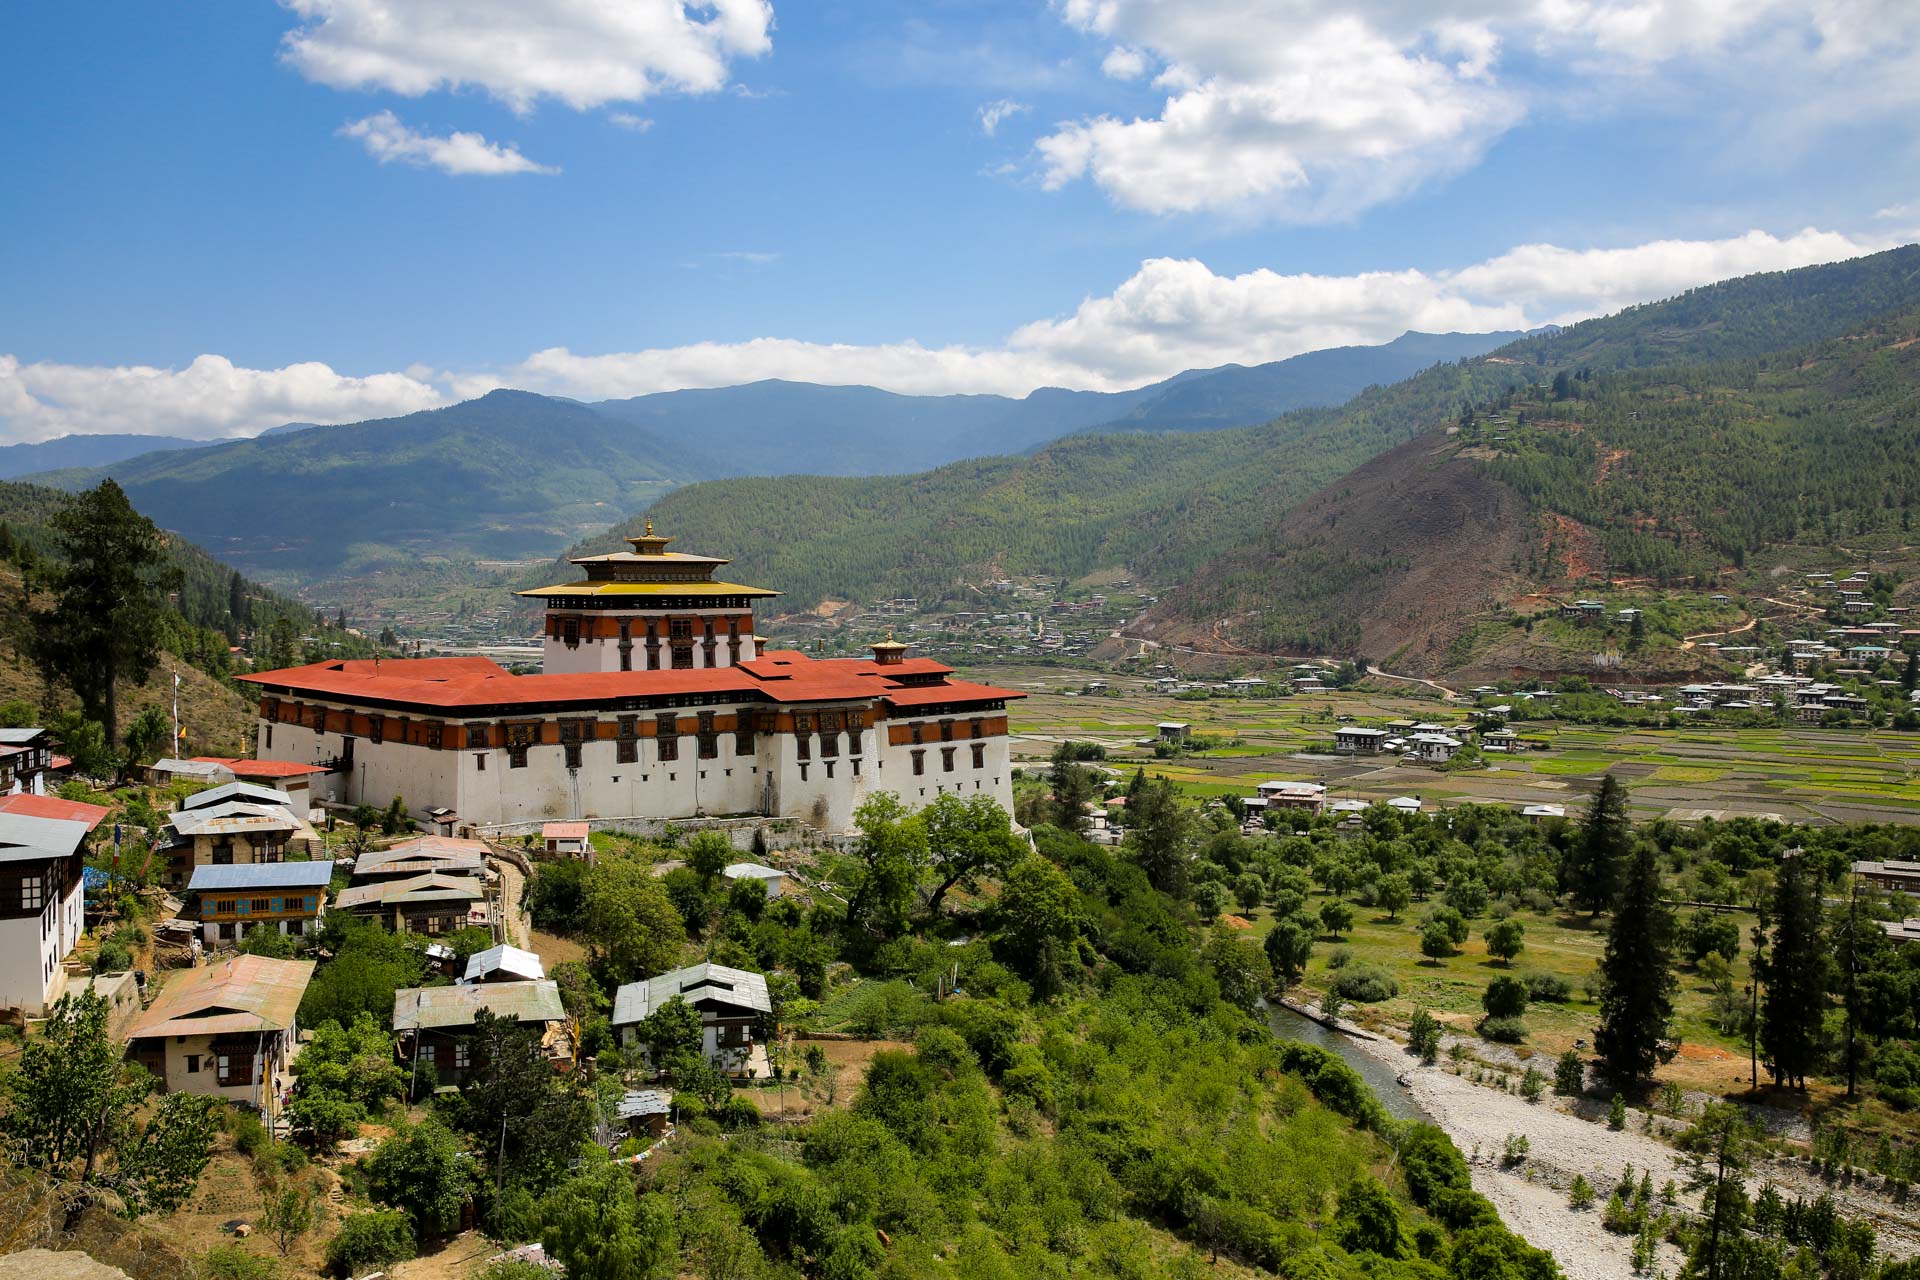 ツアー・一人旅どちらも楽しめるブータンの旅～西ブータン3都市を訪れる6日間